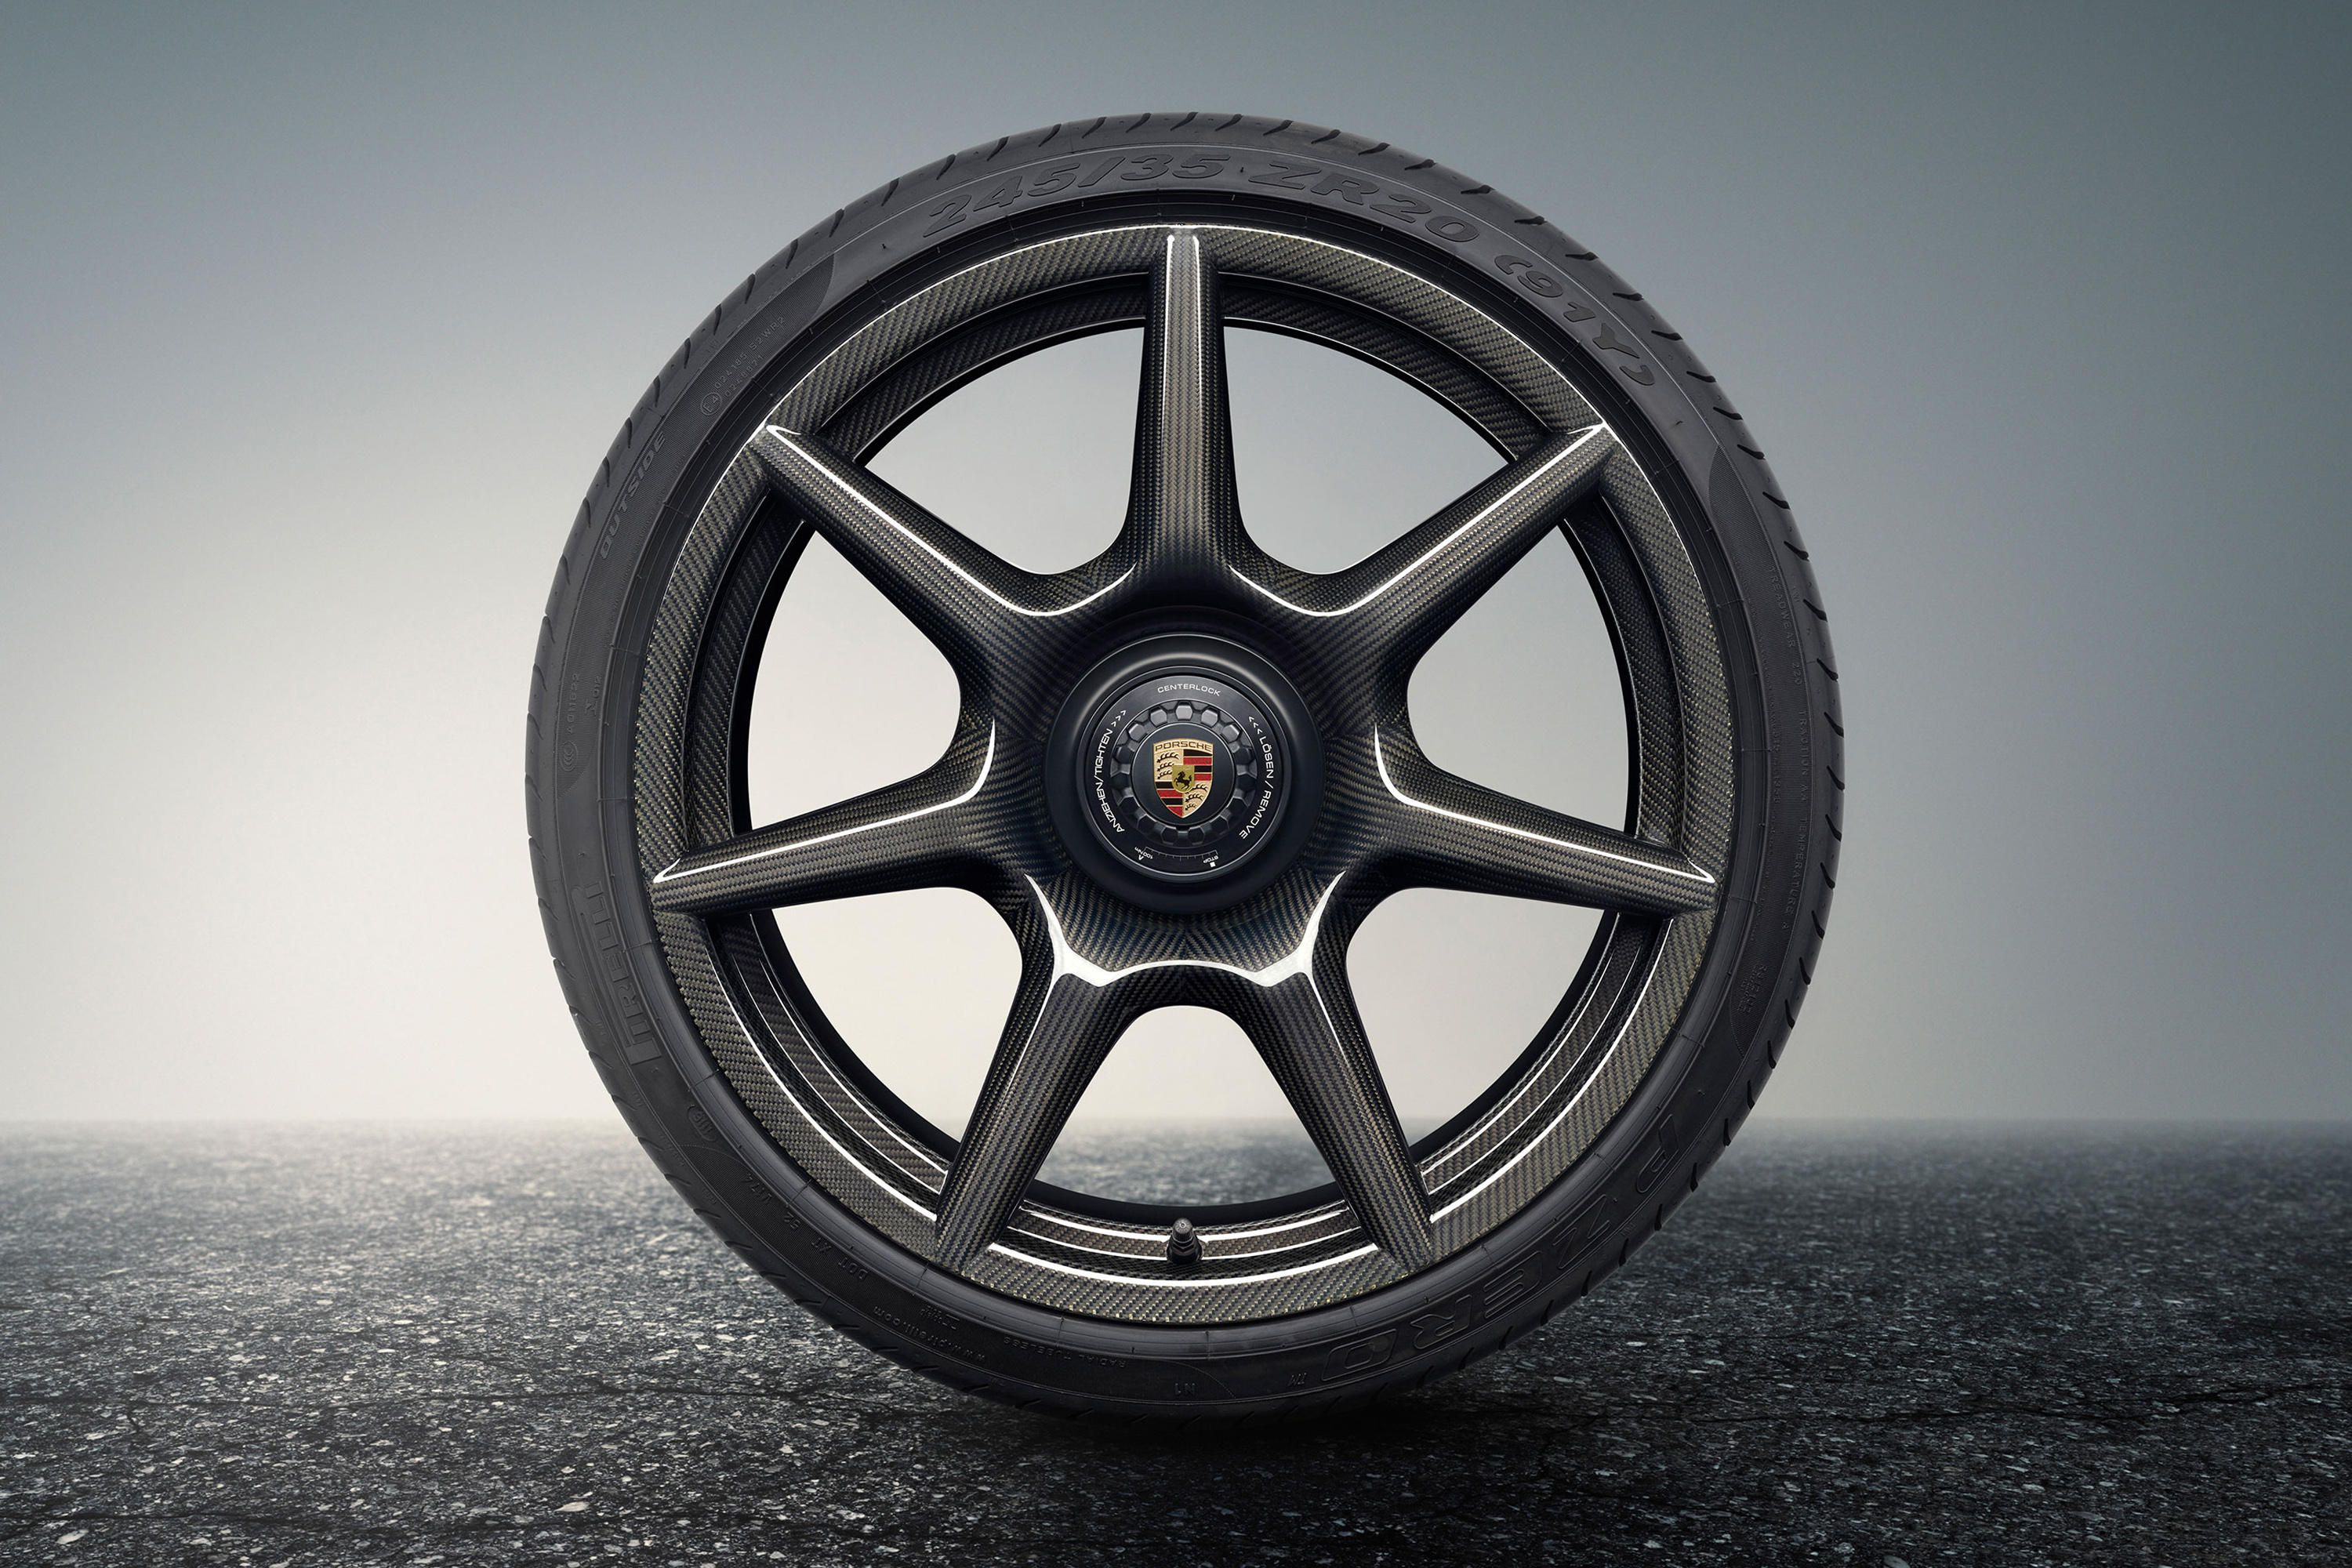 Porsche built $18,000 carbon wheels for the 911 - Roadshow